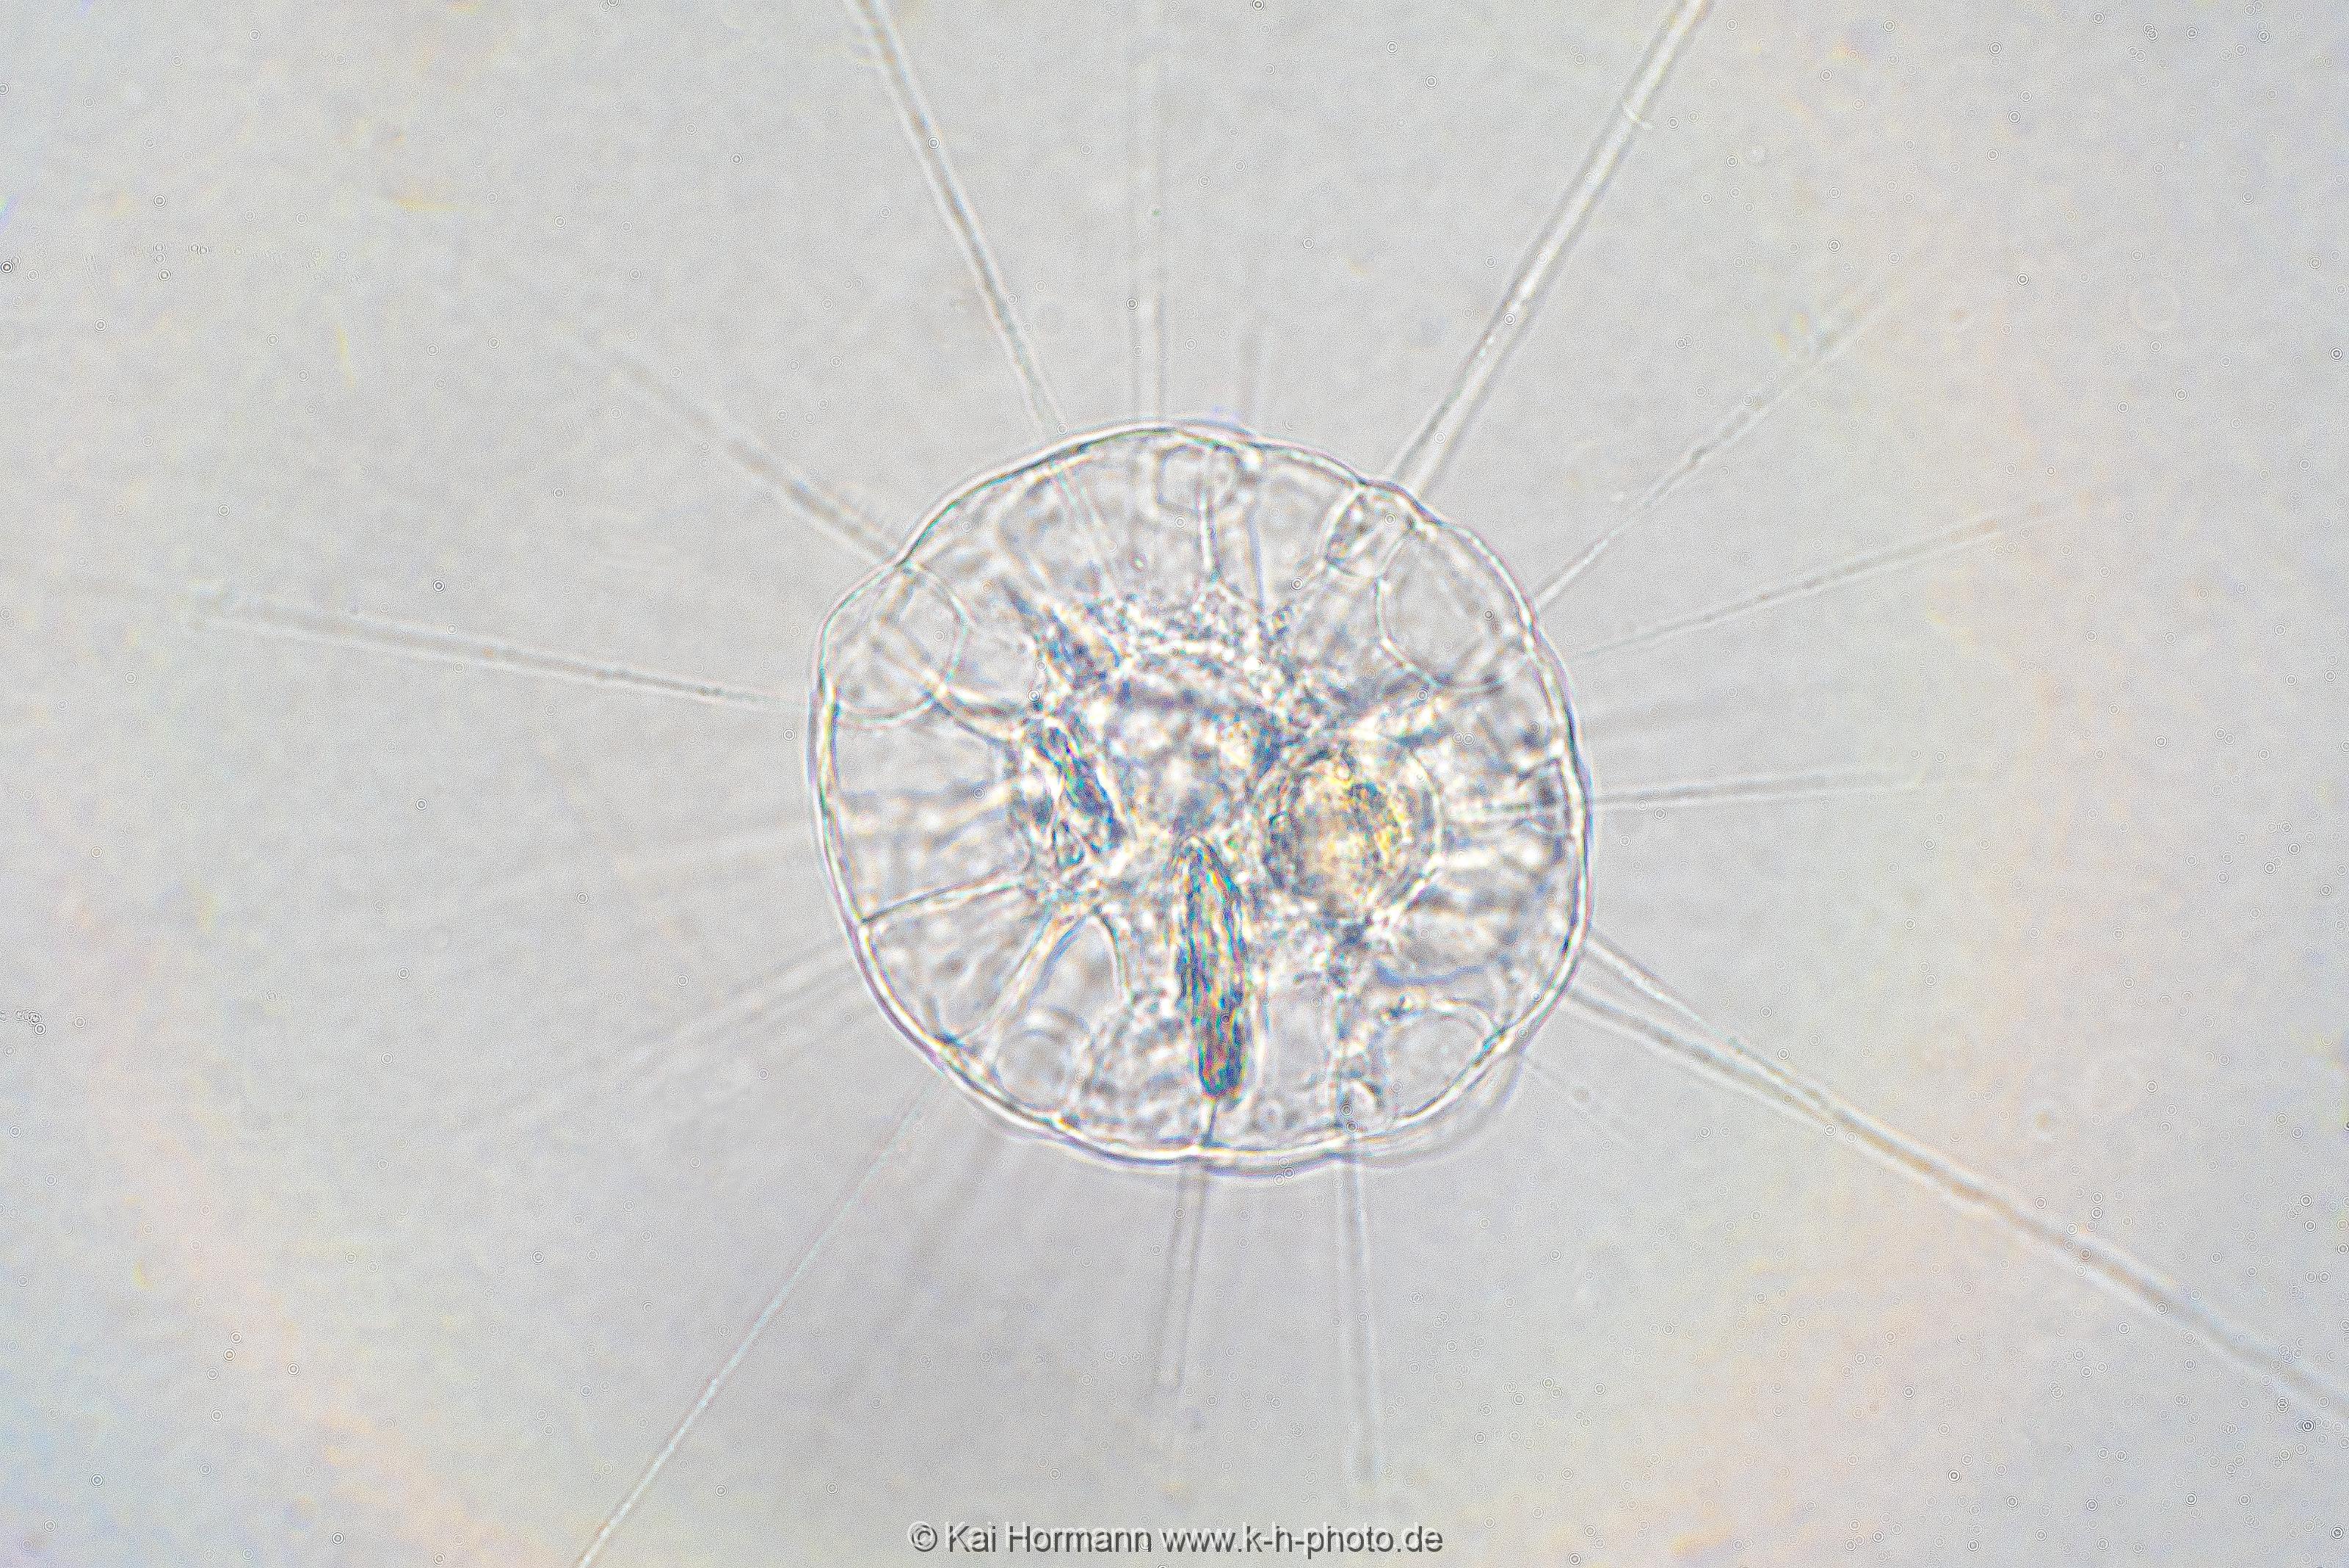 Sonnentierchen Mikrofotografie: Mikroskopische Aufnahmen von Einzellern, Algen und Kleinstlebewesen.